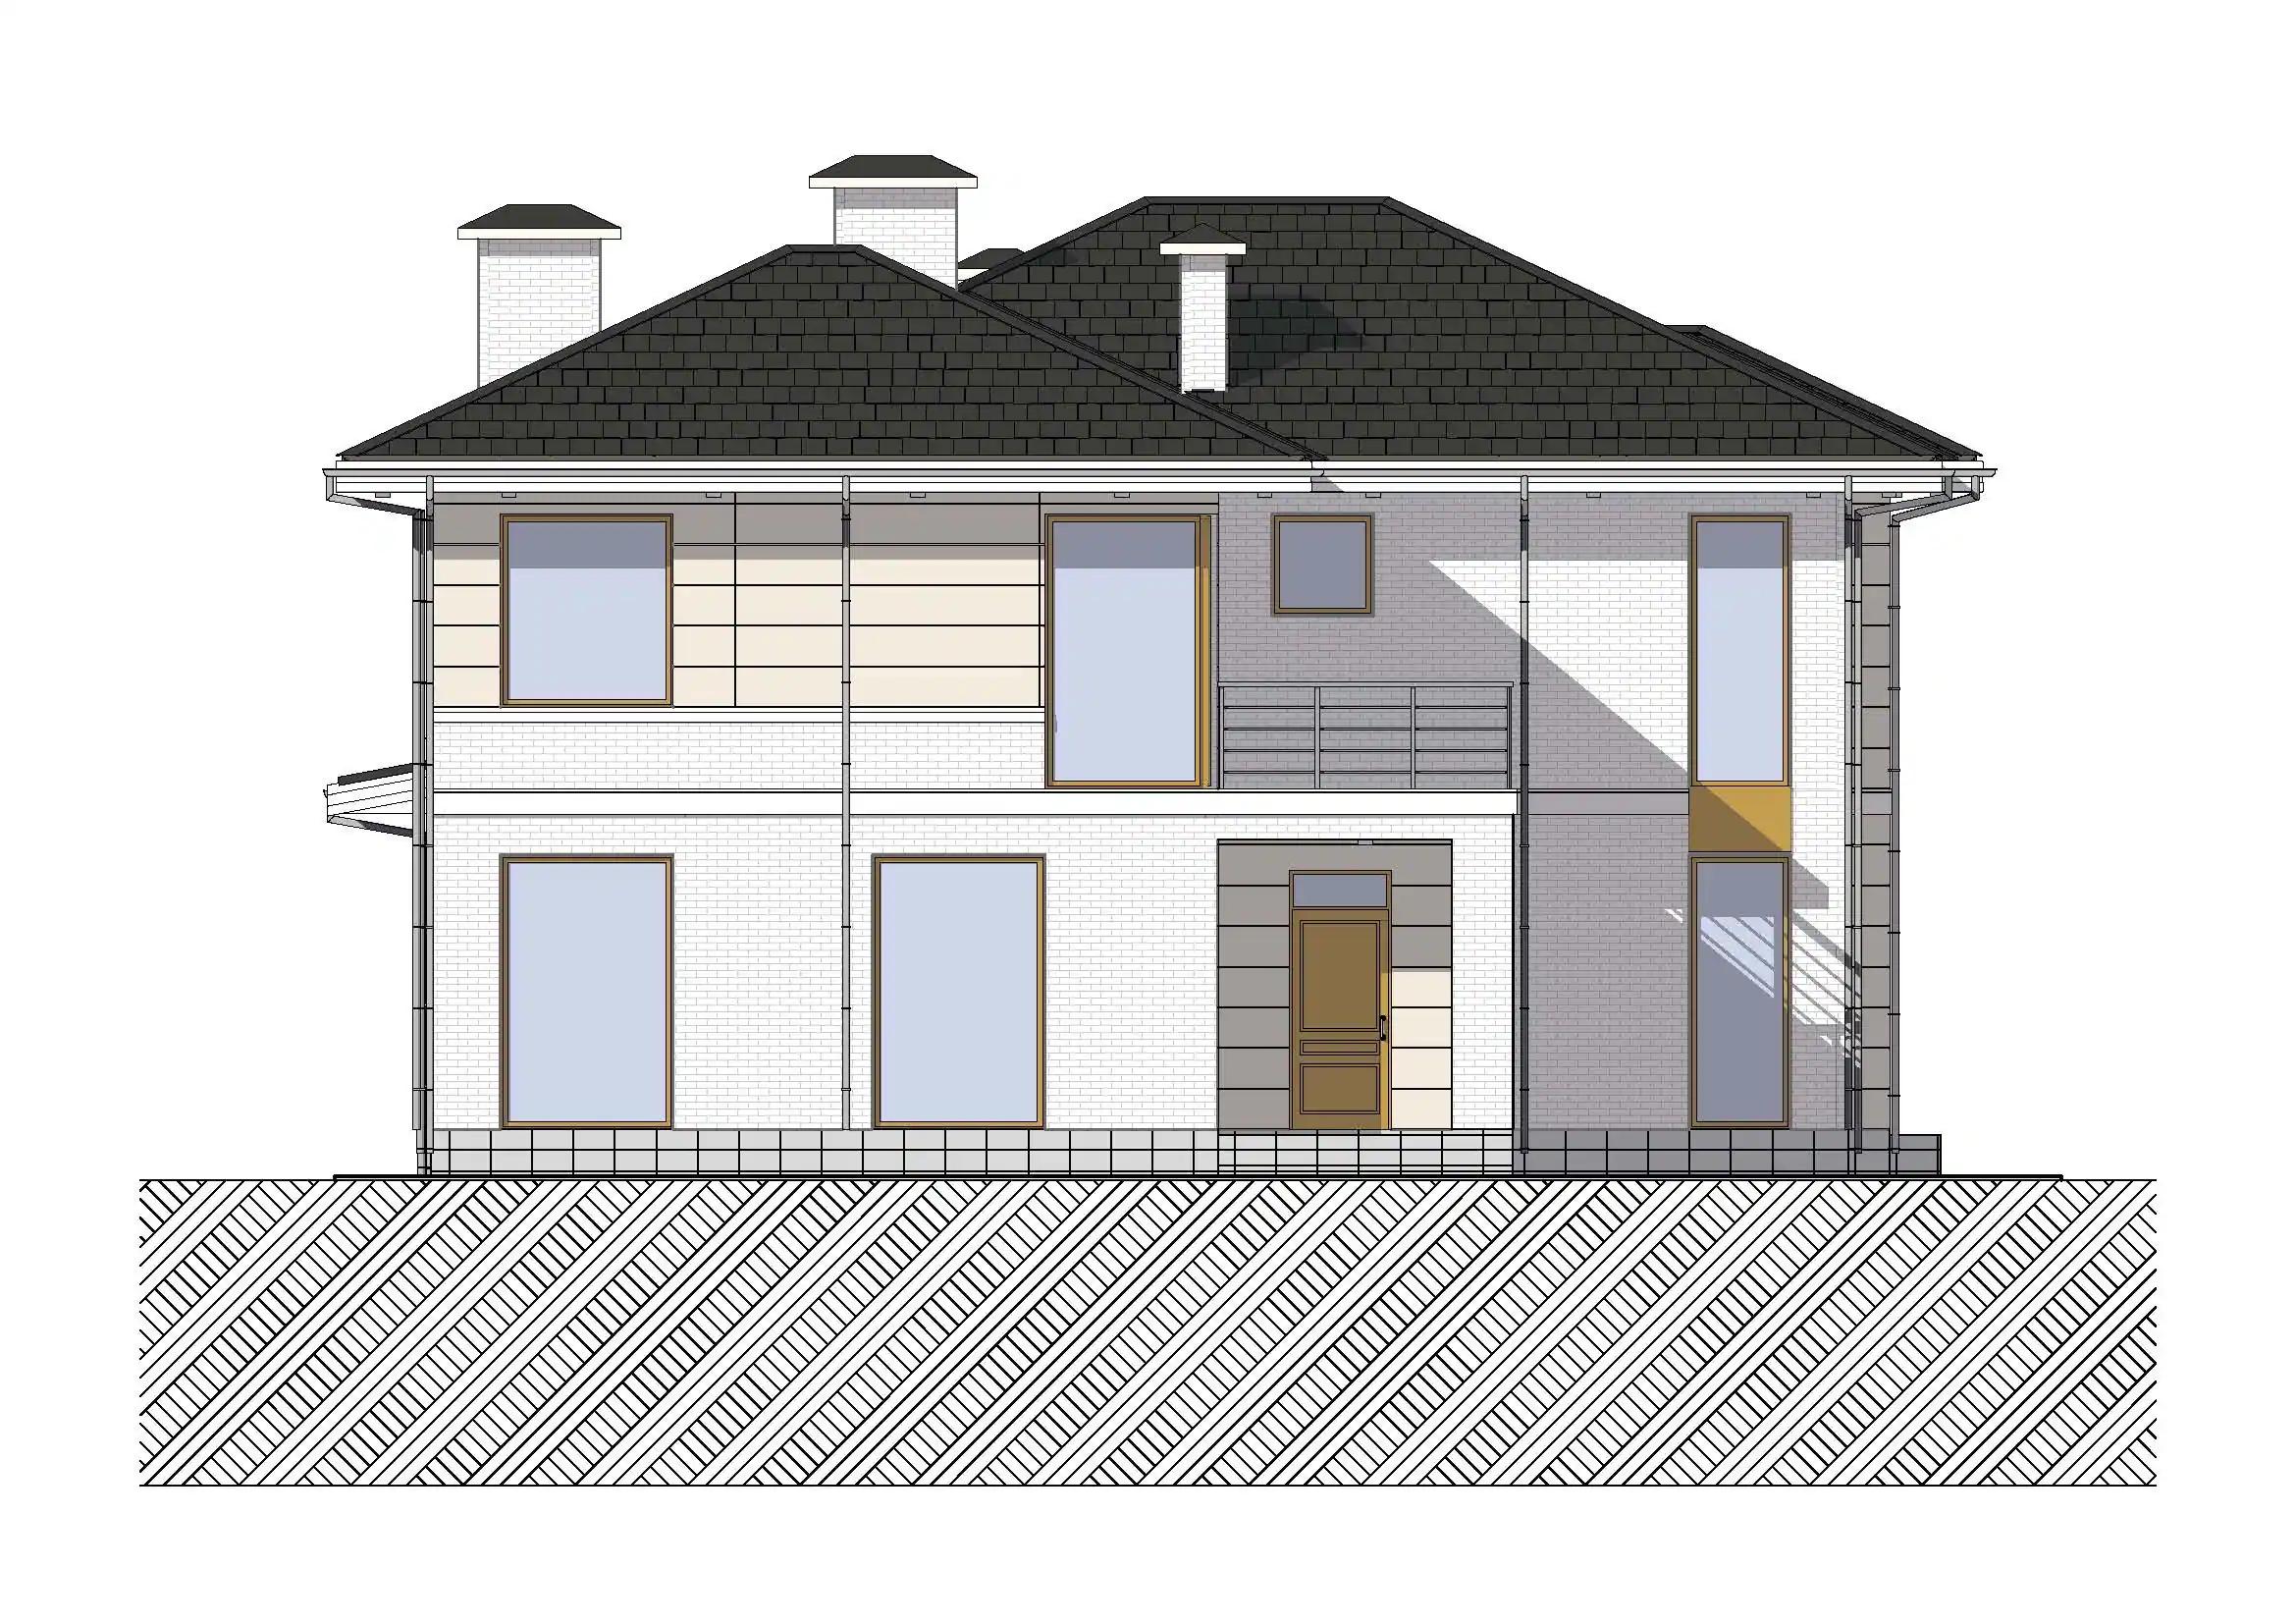 Фасады проекта дома №h-1618 proect-1618_f1_result.webp